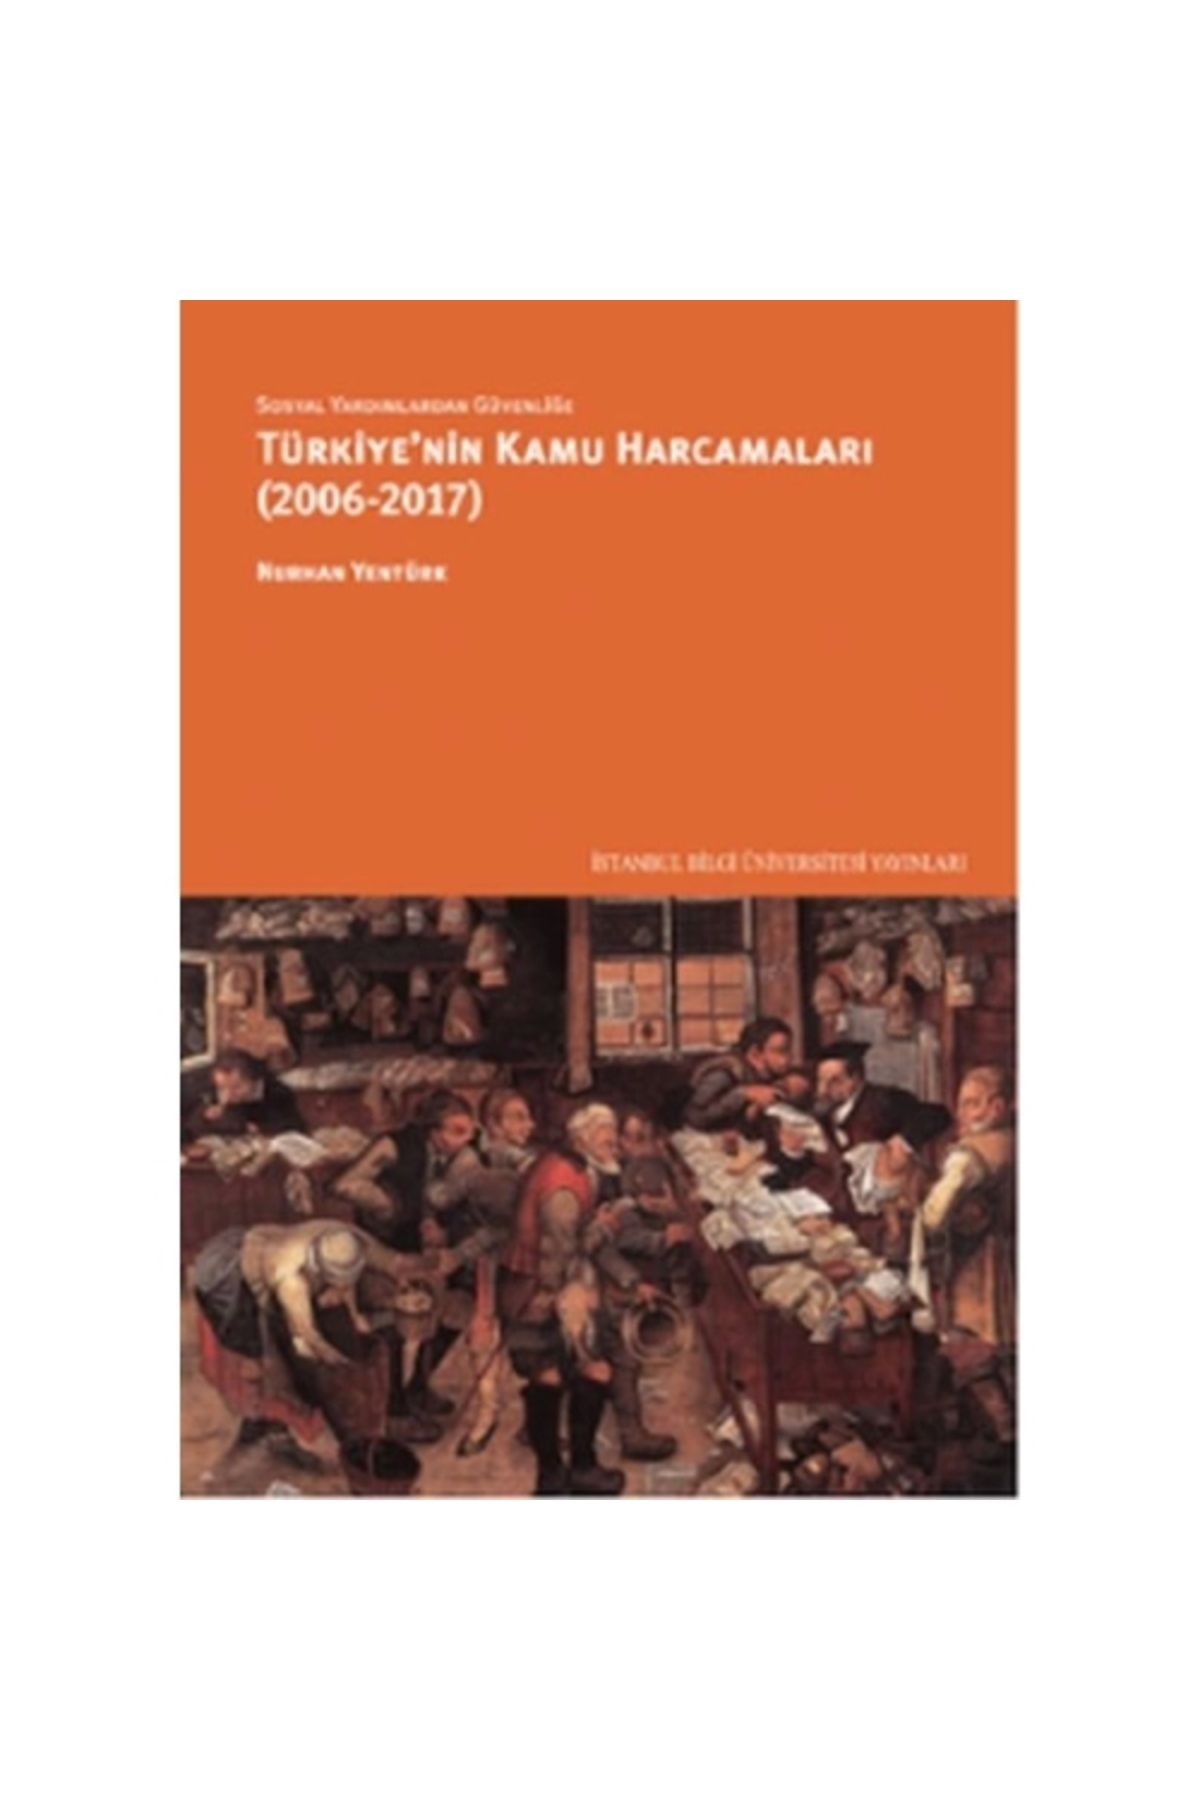 İstanbul Bilgi Üniversitesi Yayınları Sosyal Yardımlardan Güvenliğe Türkiye'nin Kamu Harcamaları (2006-2017)